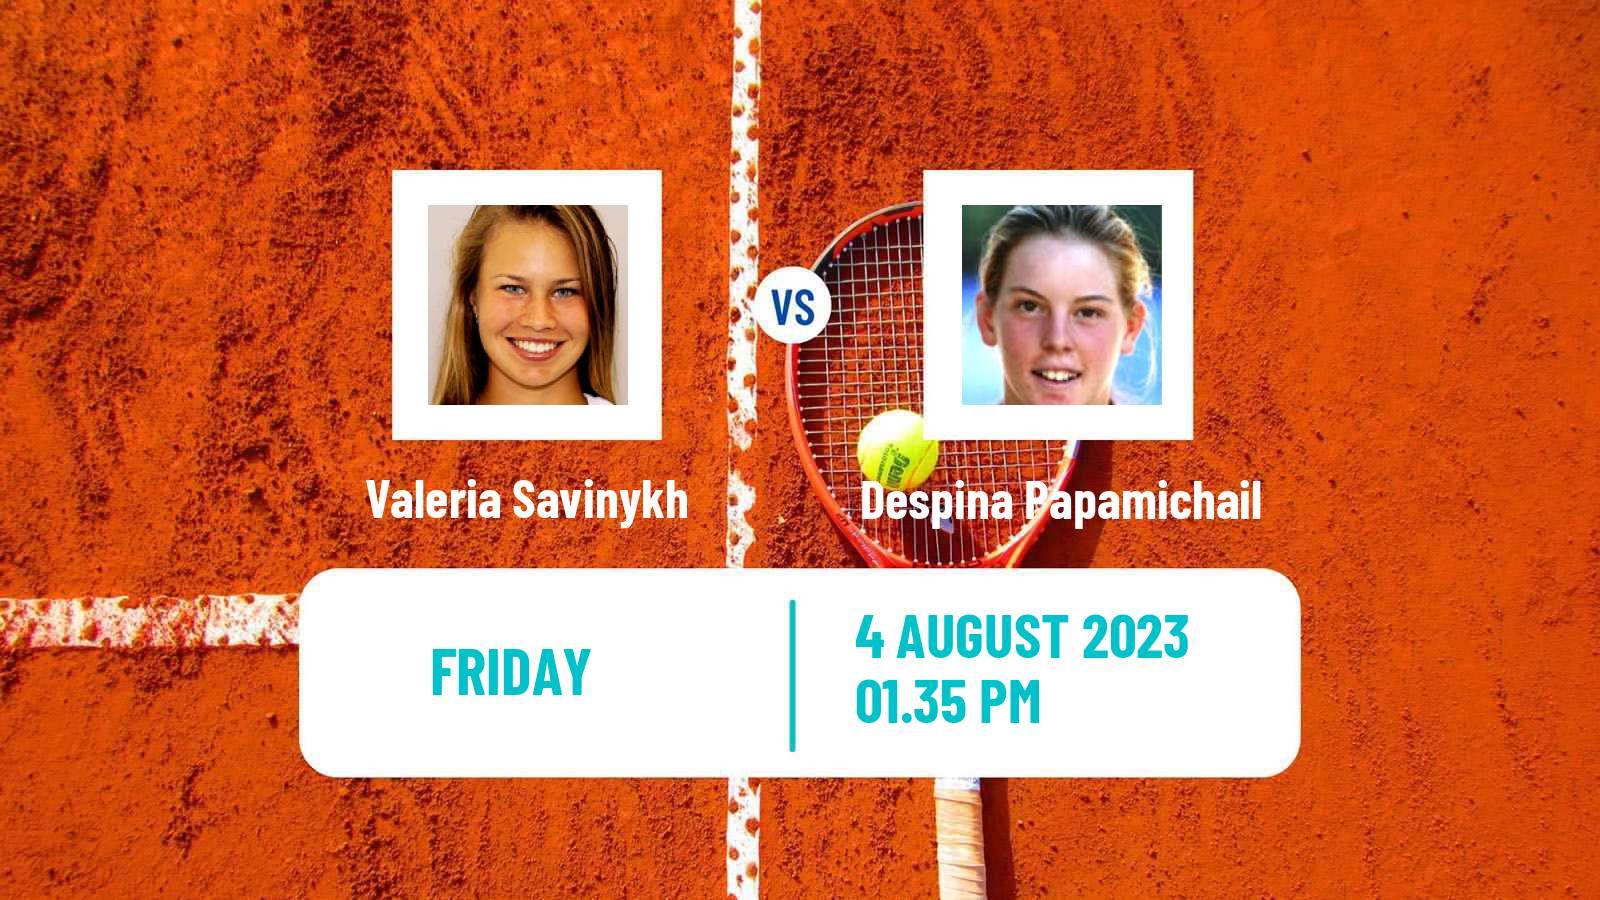 Tennis ITF W60 Barcelona Women Valeria Savinykh - Despina Papamichail